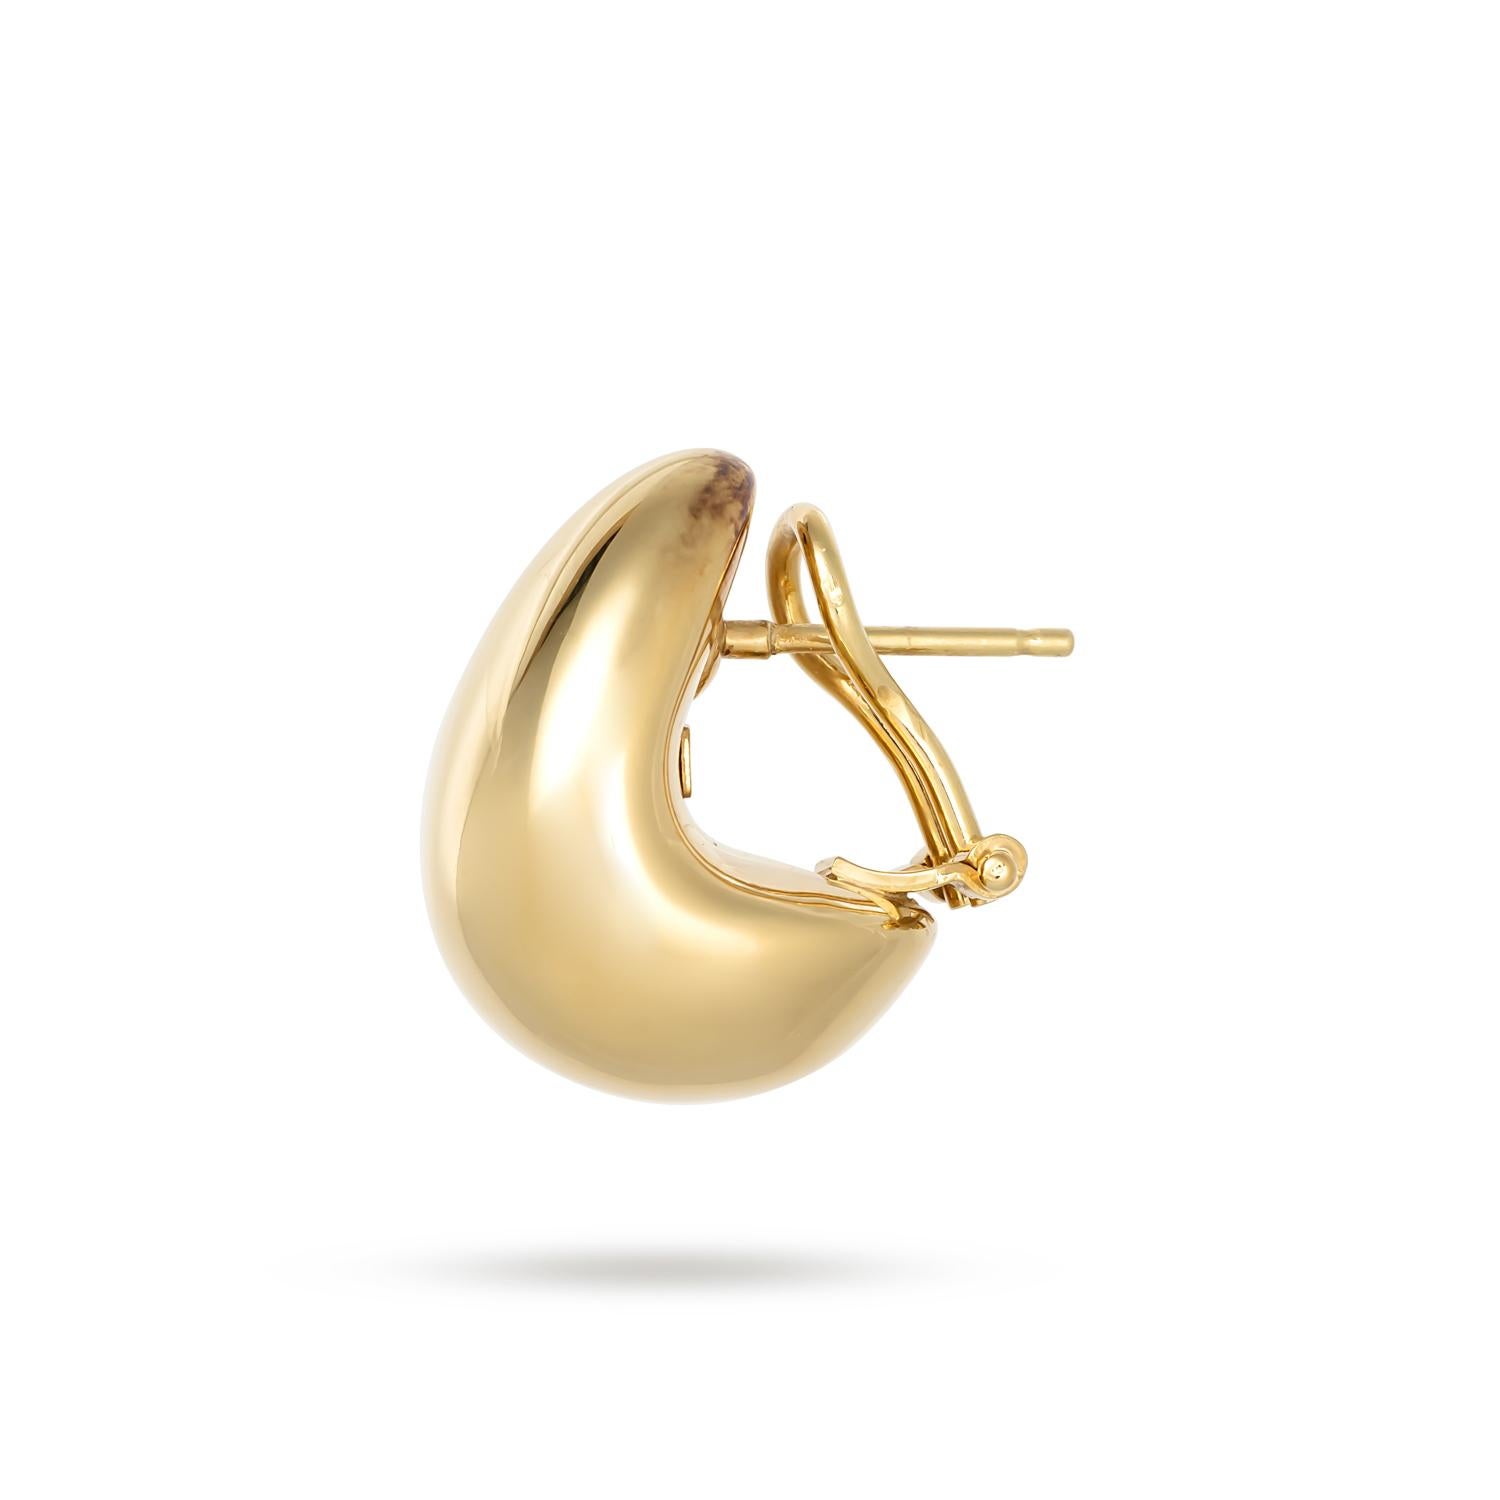 Erhöhen Sie Ihre Eleganz mit dem exquisiten Charme der Roberto Coin Designer Gold Domed Earrings, einem Meisterwerk aus luxuriösem 18k Gelbgold. Diese Ohrringe sind leicht und hohl und bieten einen hohen Tragekomfort, der den ganzen Tag und die